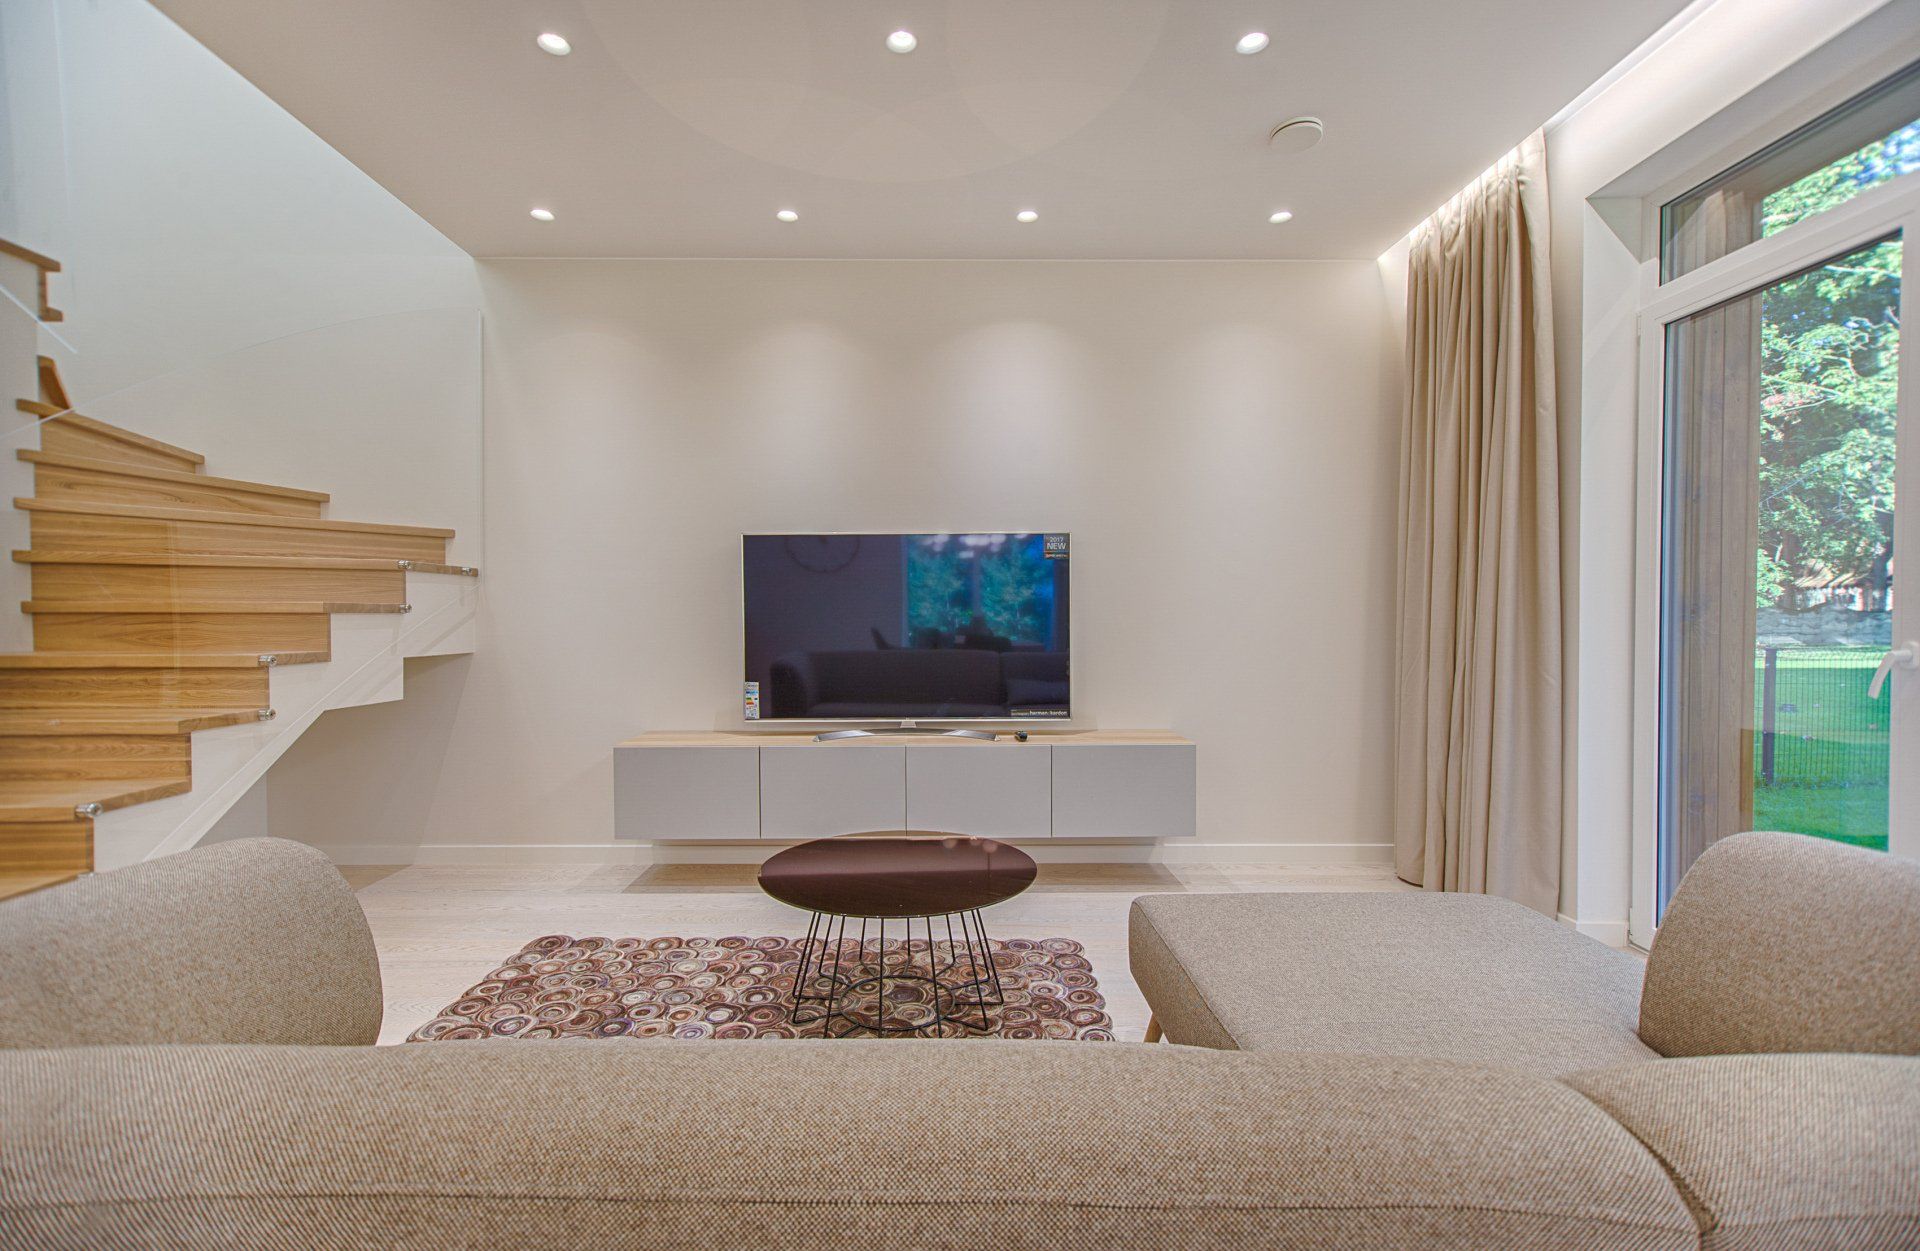 Ein Wohnzimmer mit Couch, Fernseher und Treppe.